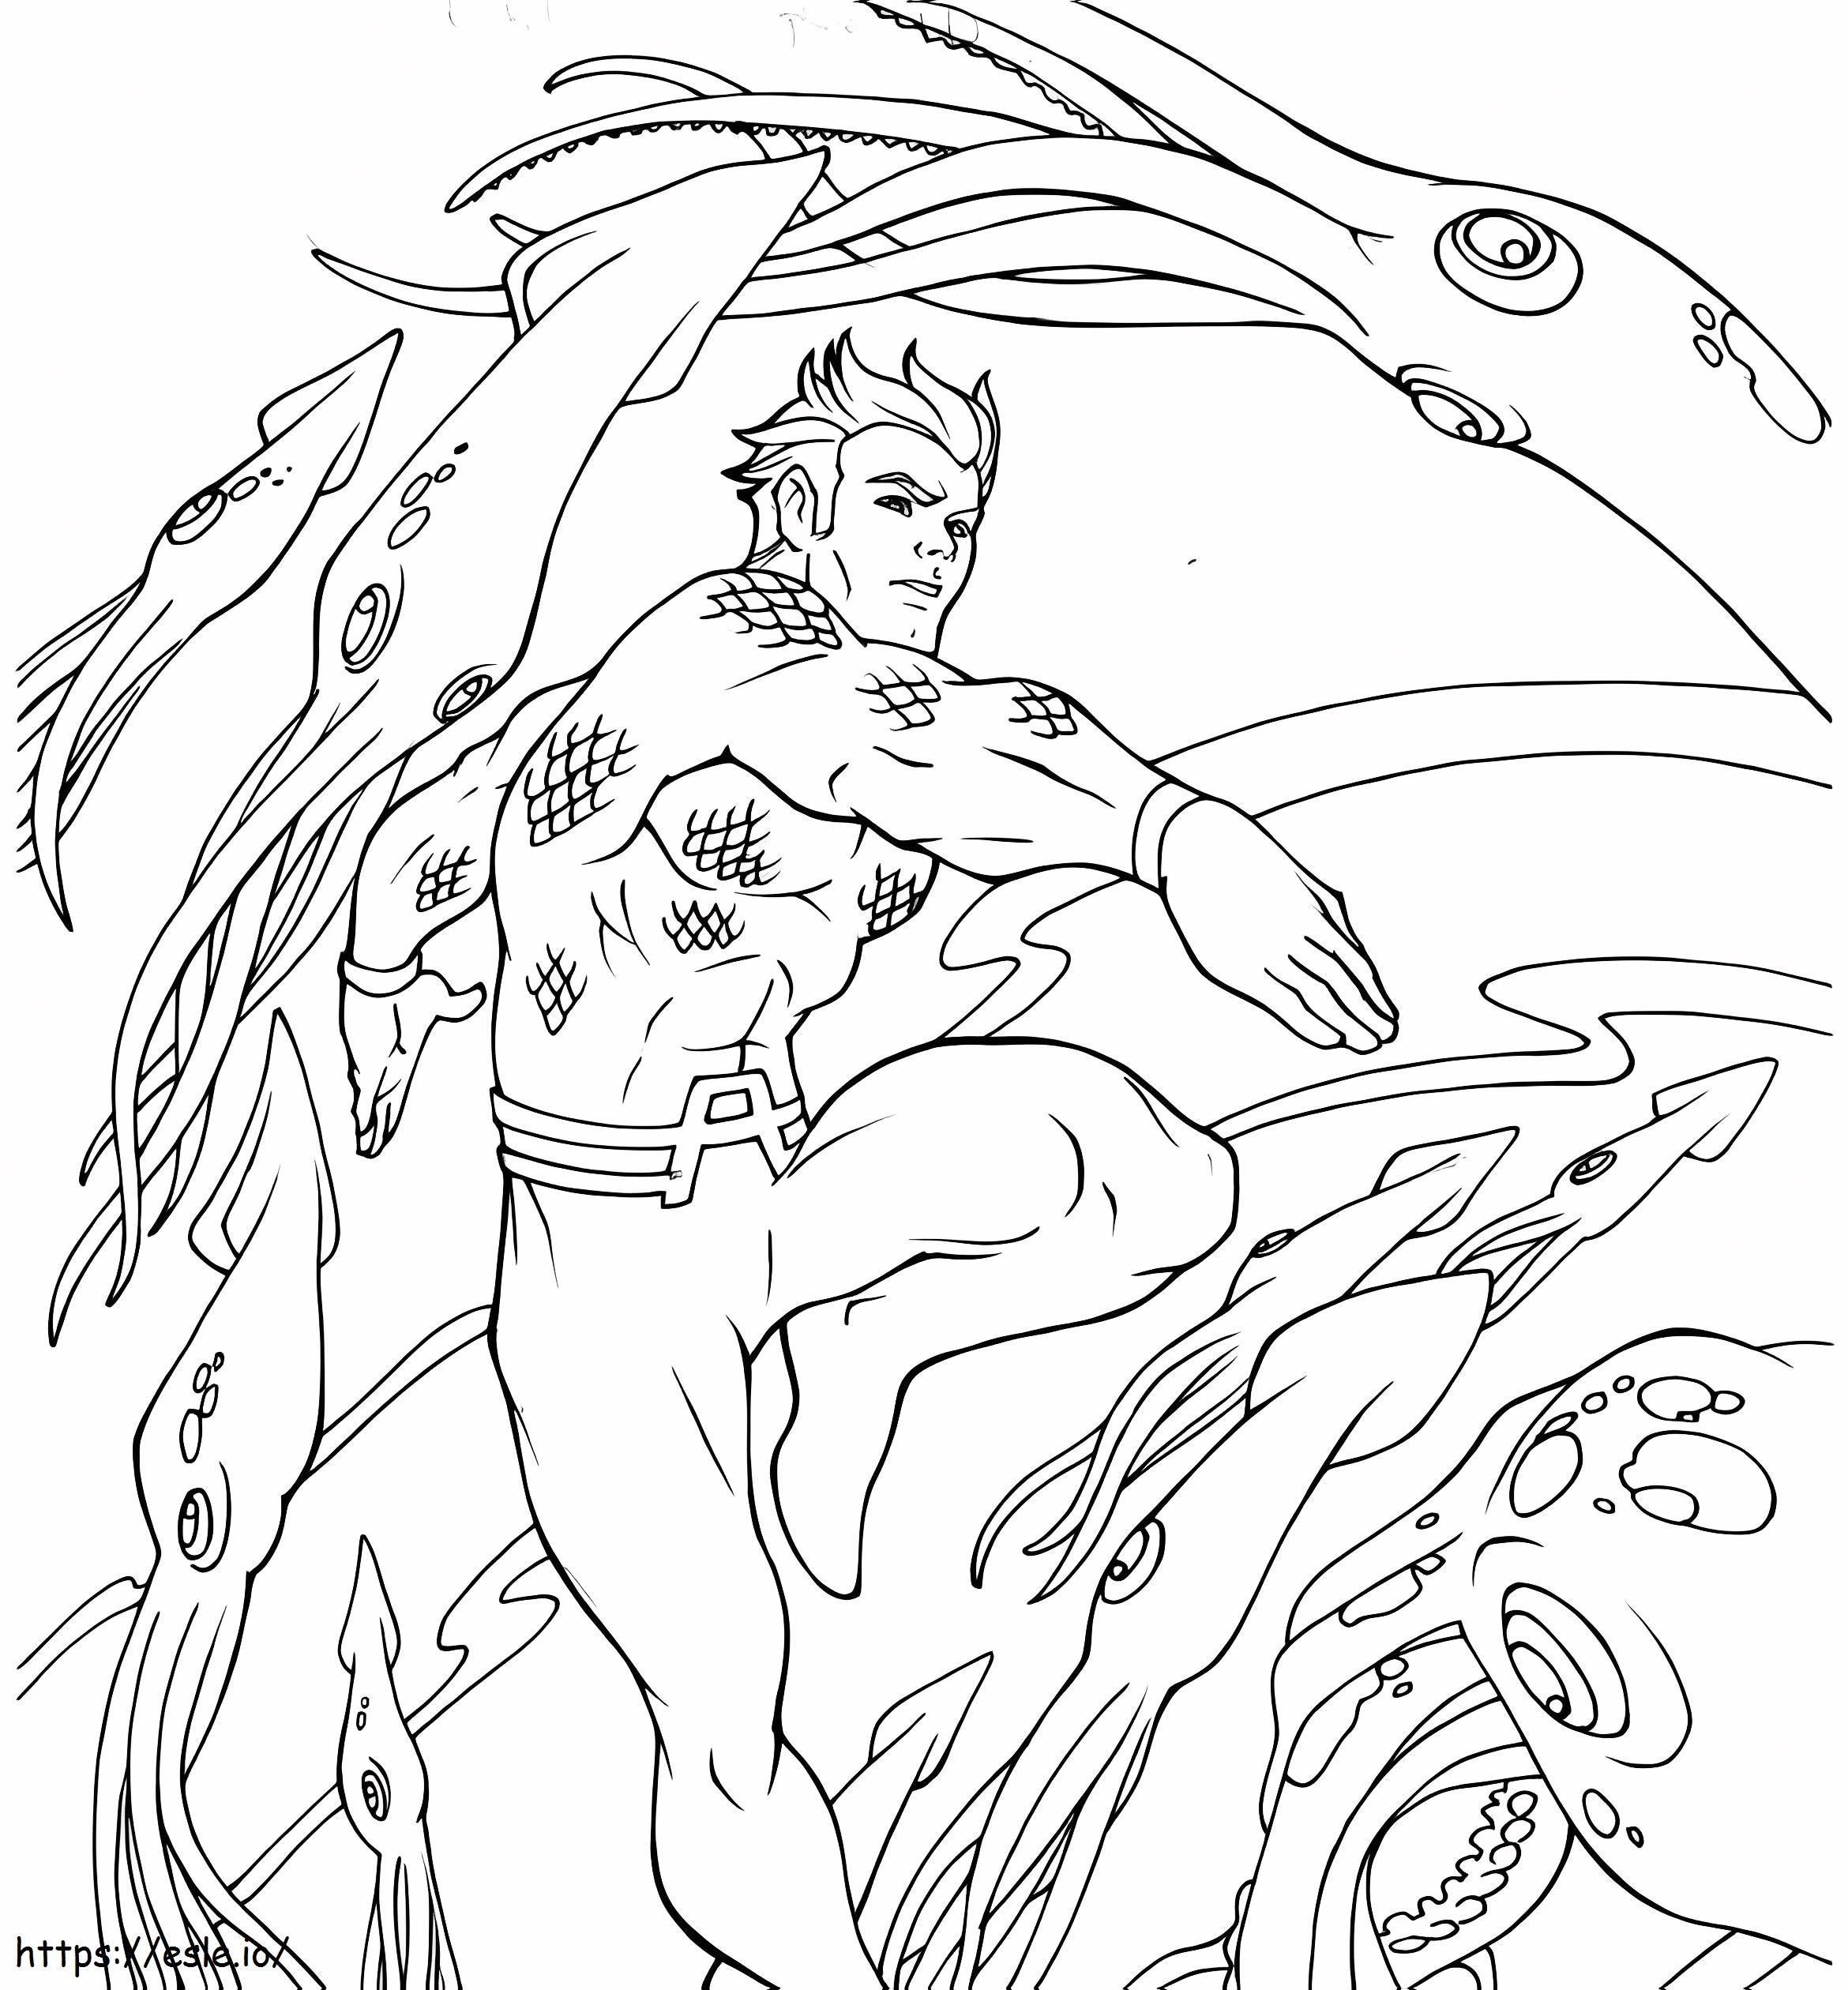 Aquaman Y Animal Marino coloring page